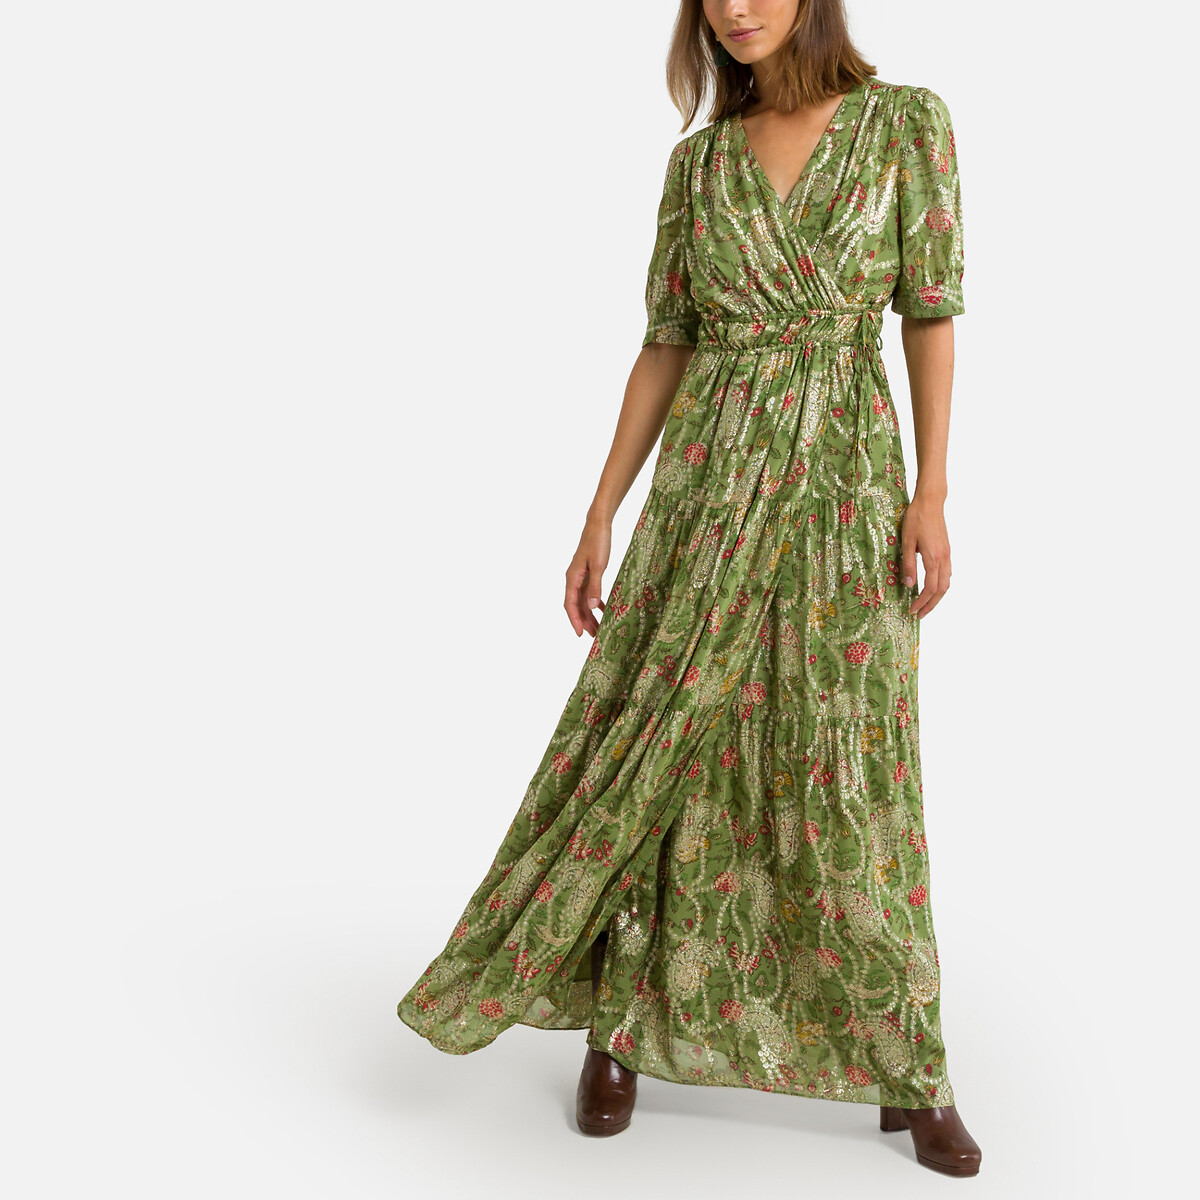 Платье с запахом длинное короткие рукава RUBI 1(S) зеленый платье длинное круглый вырез короткие рукава с напуском 52 зеленый